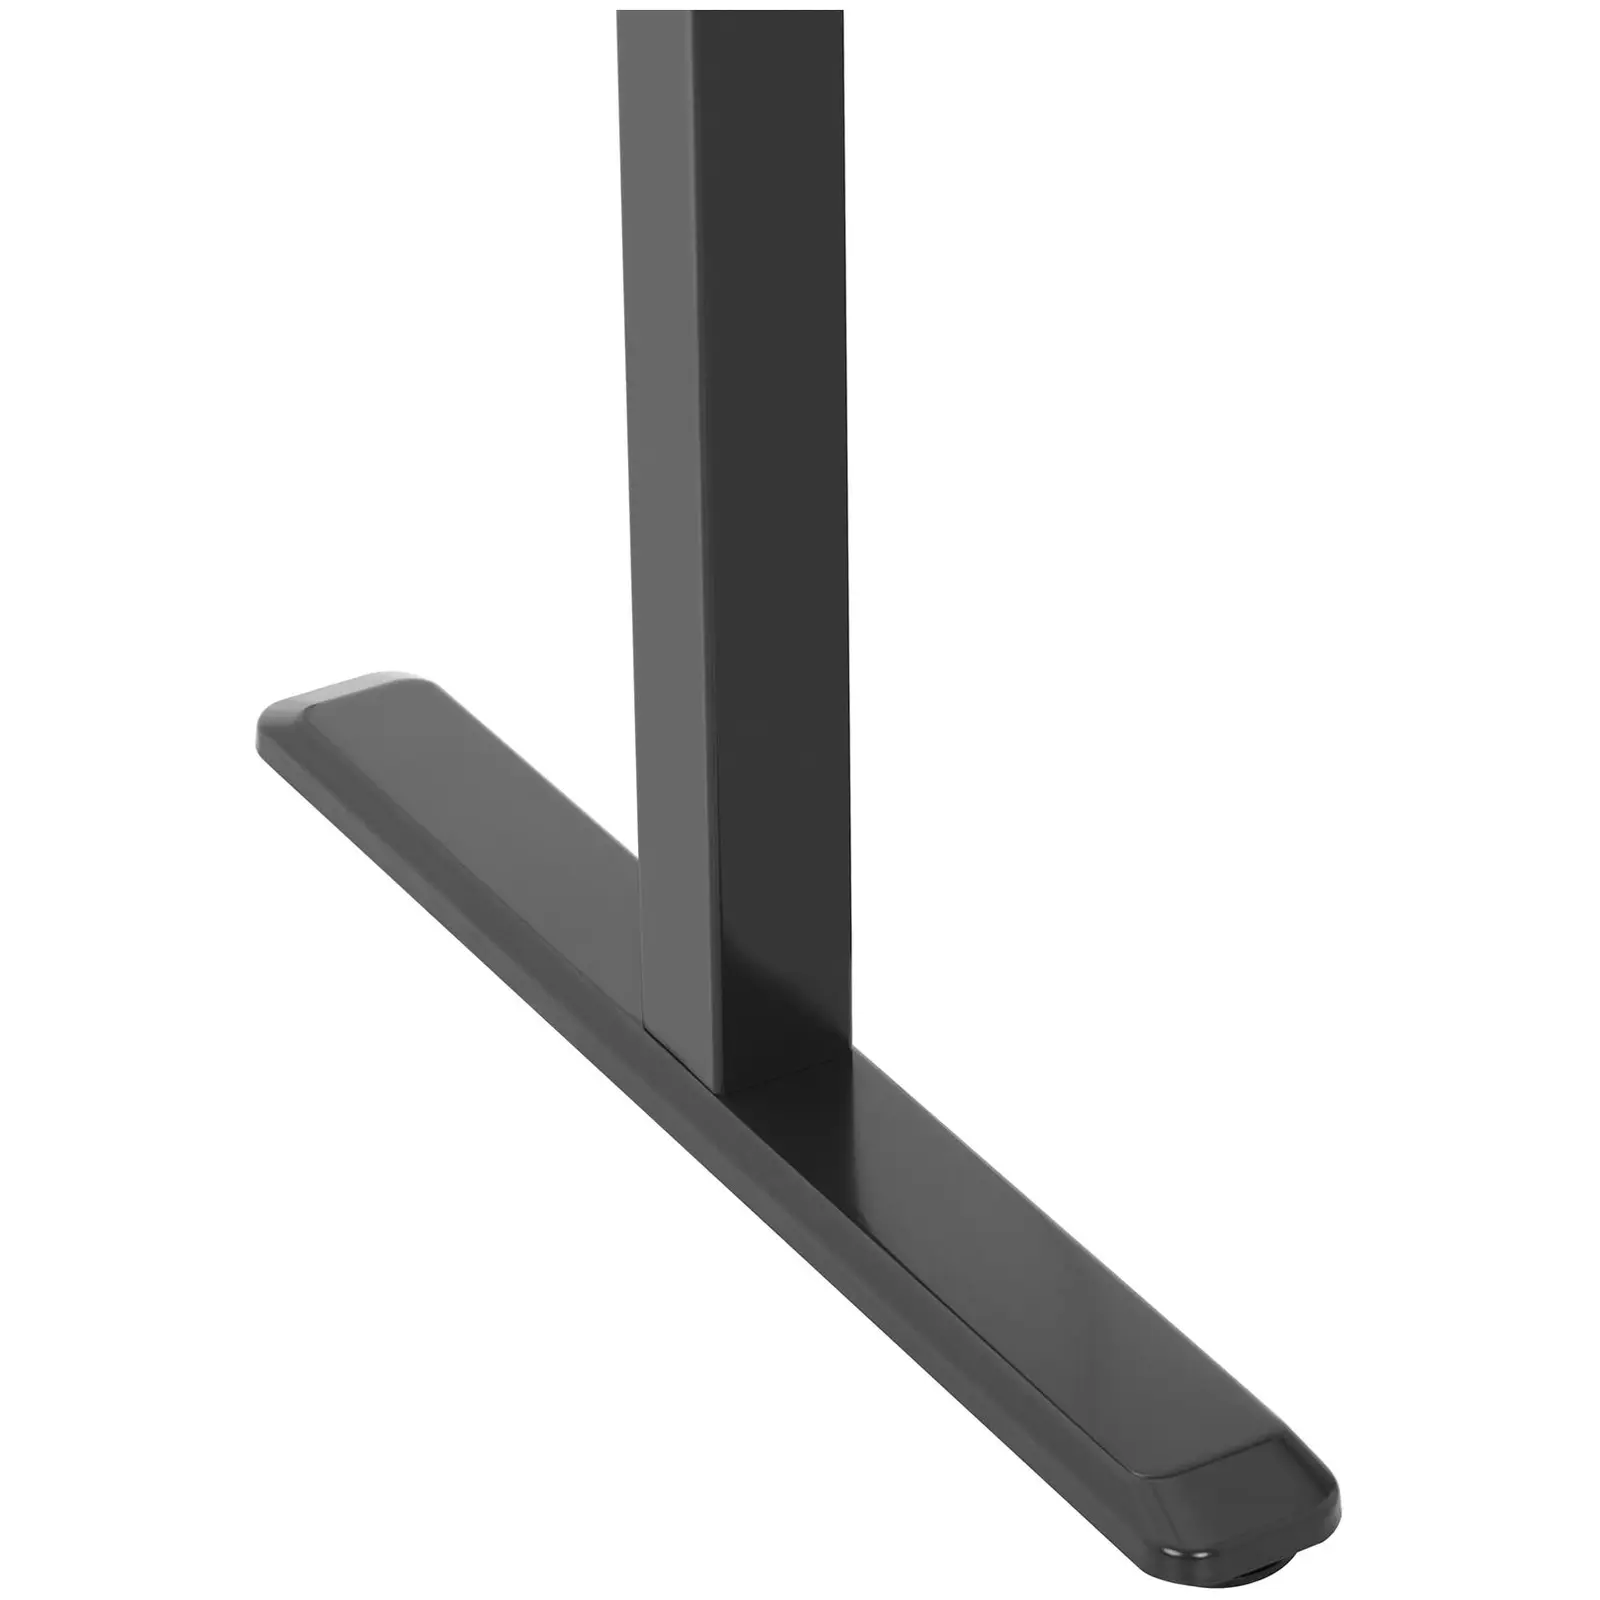 Állítható magasságú asztal keret - 120 W - 80 kg - fekete